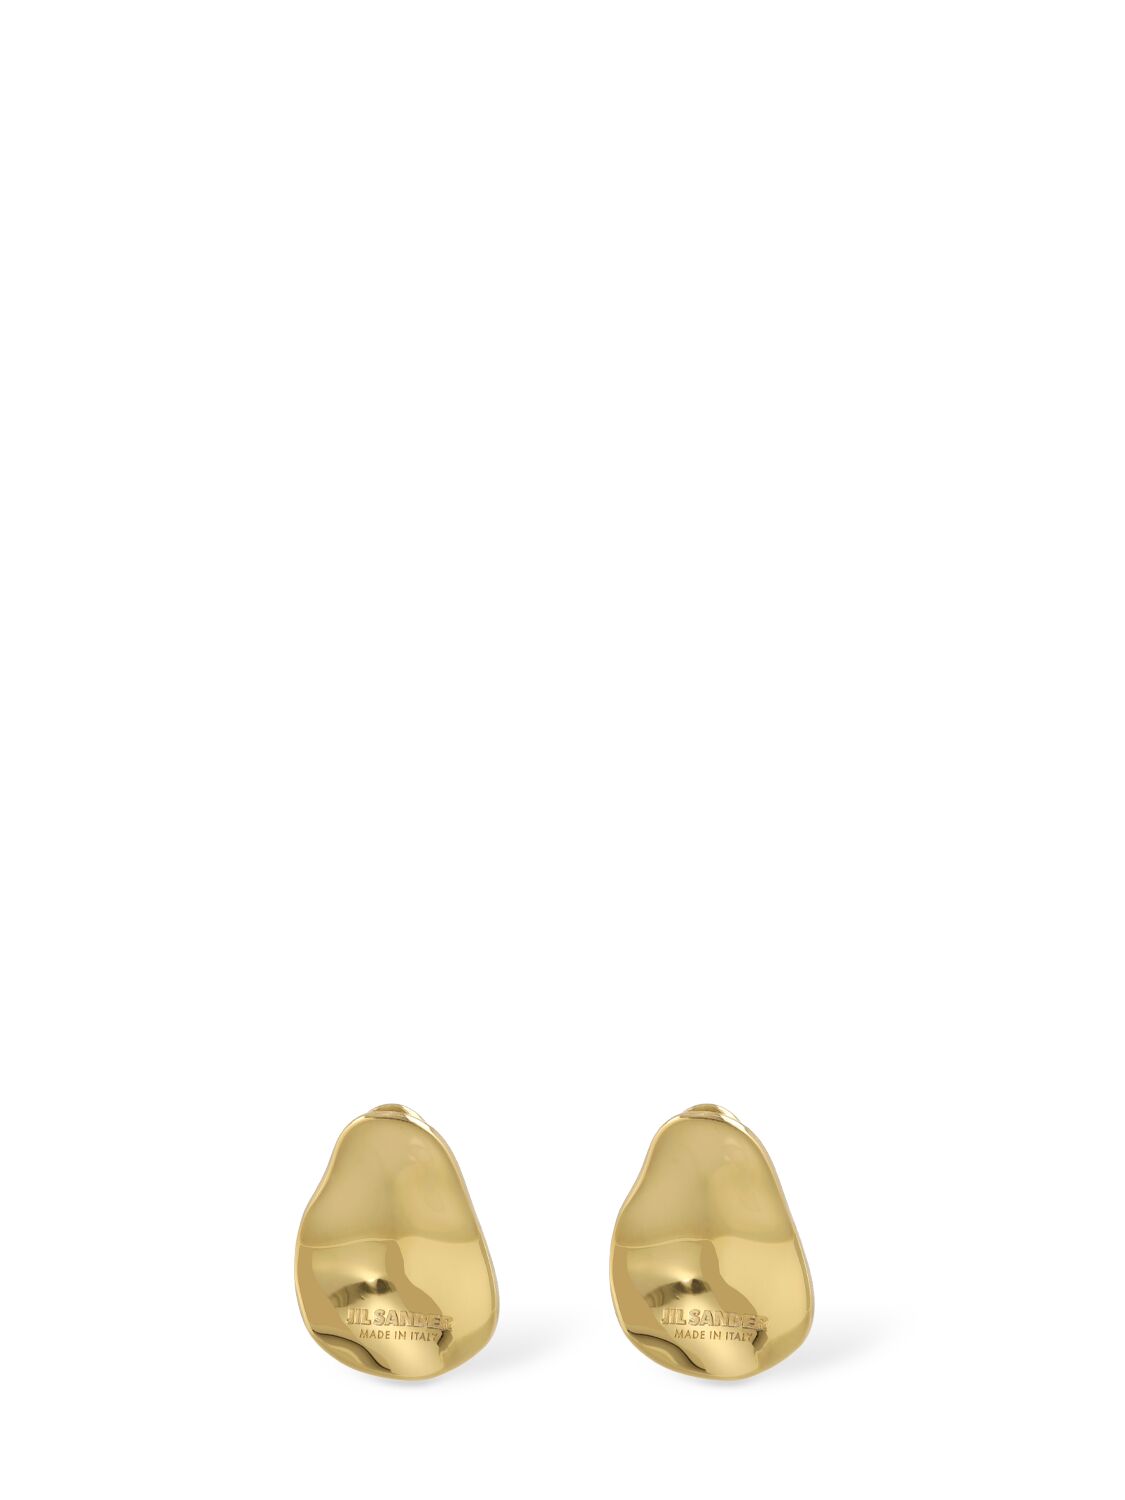 Jil Sander Cw4 5 Stud Earrings In 골드